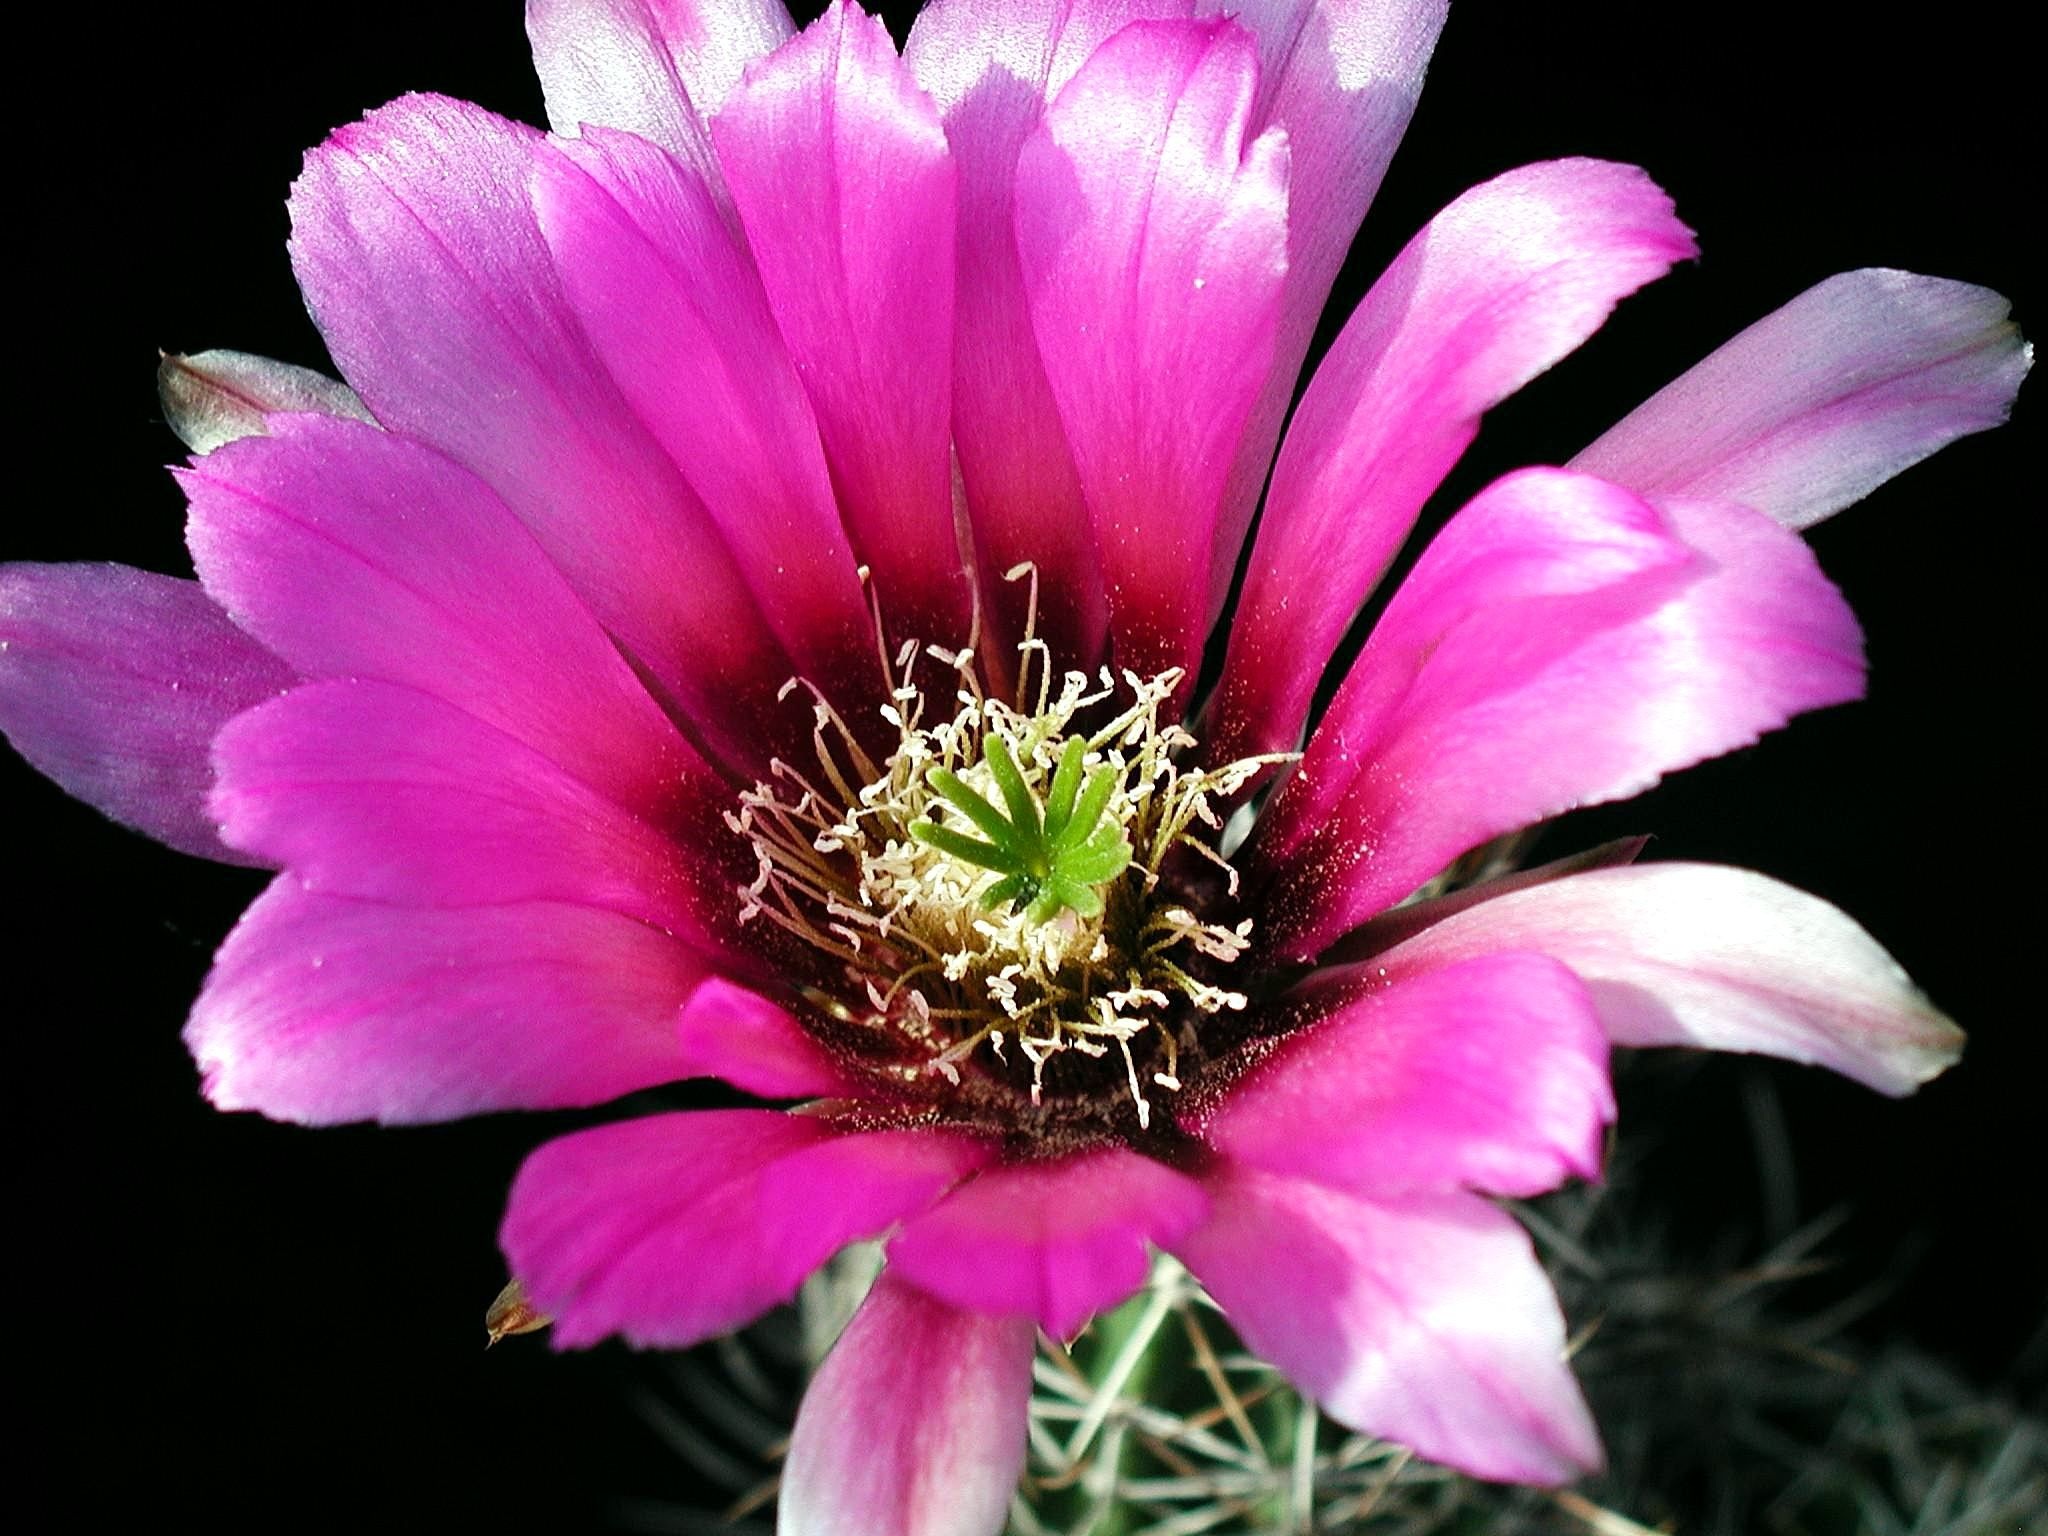 Flower in the garden photo